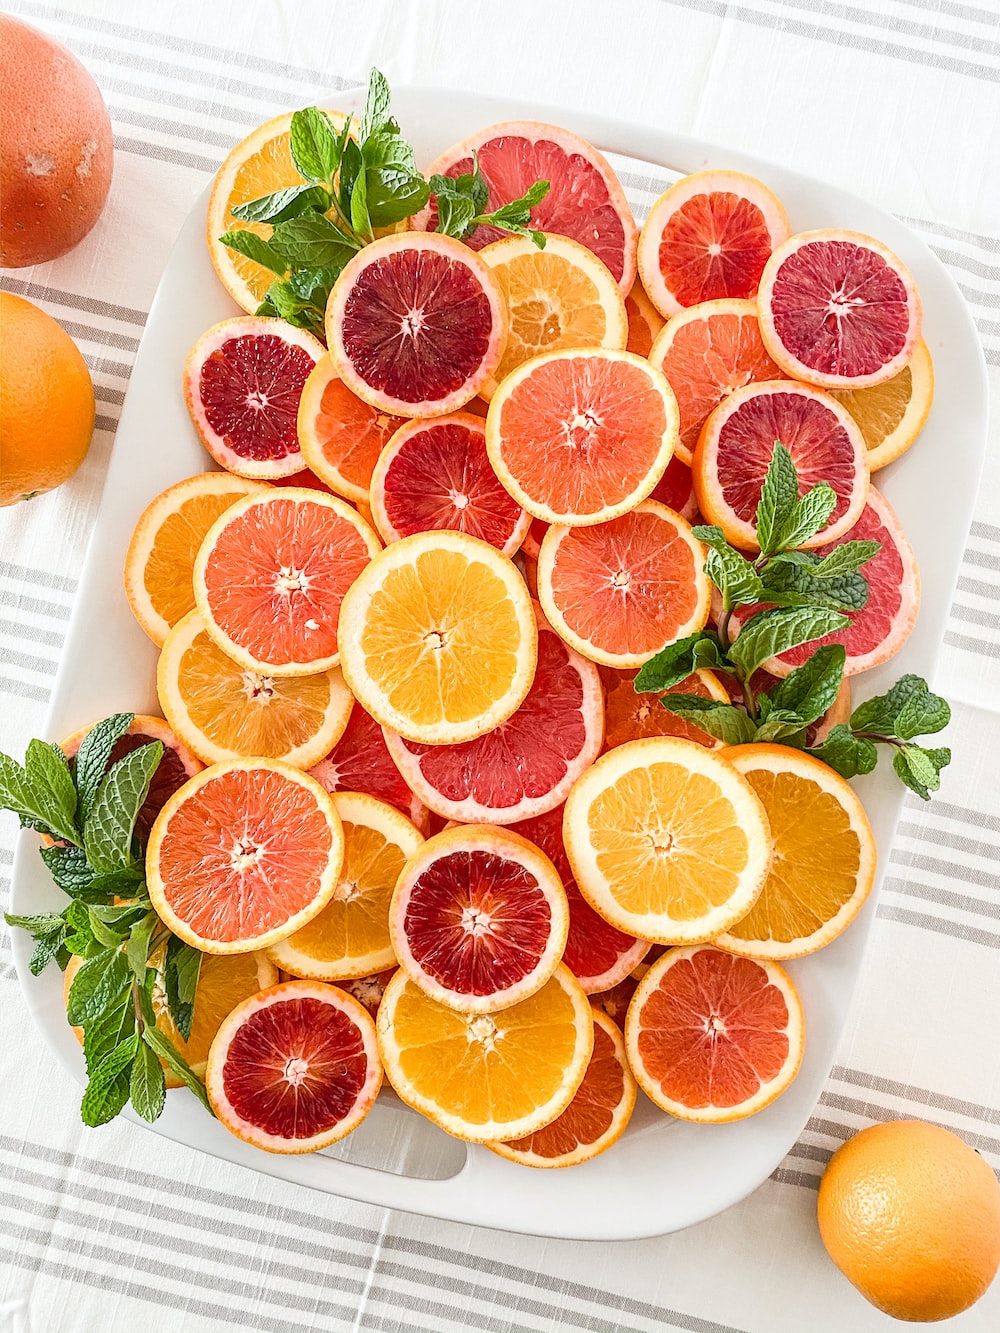 건강한 피로 회복법: 우리 몸이 원하는 제대로 된 휴식 방법 - 비타민c가 풍부한 과일들